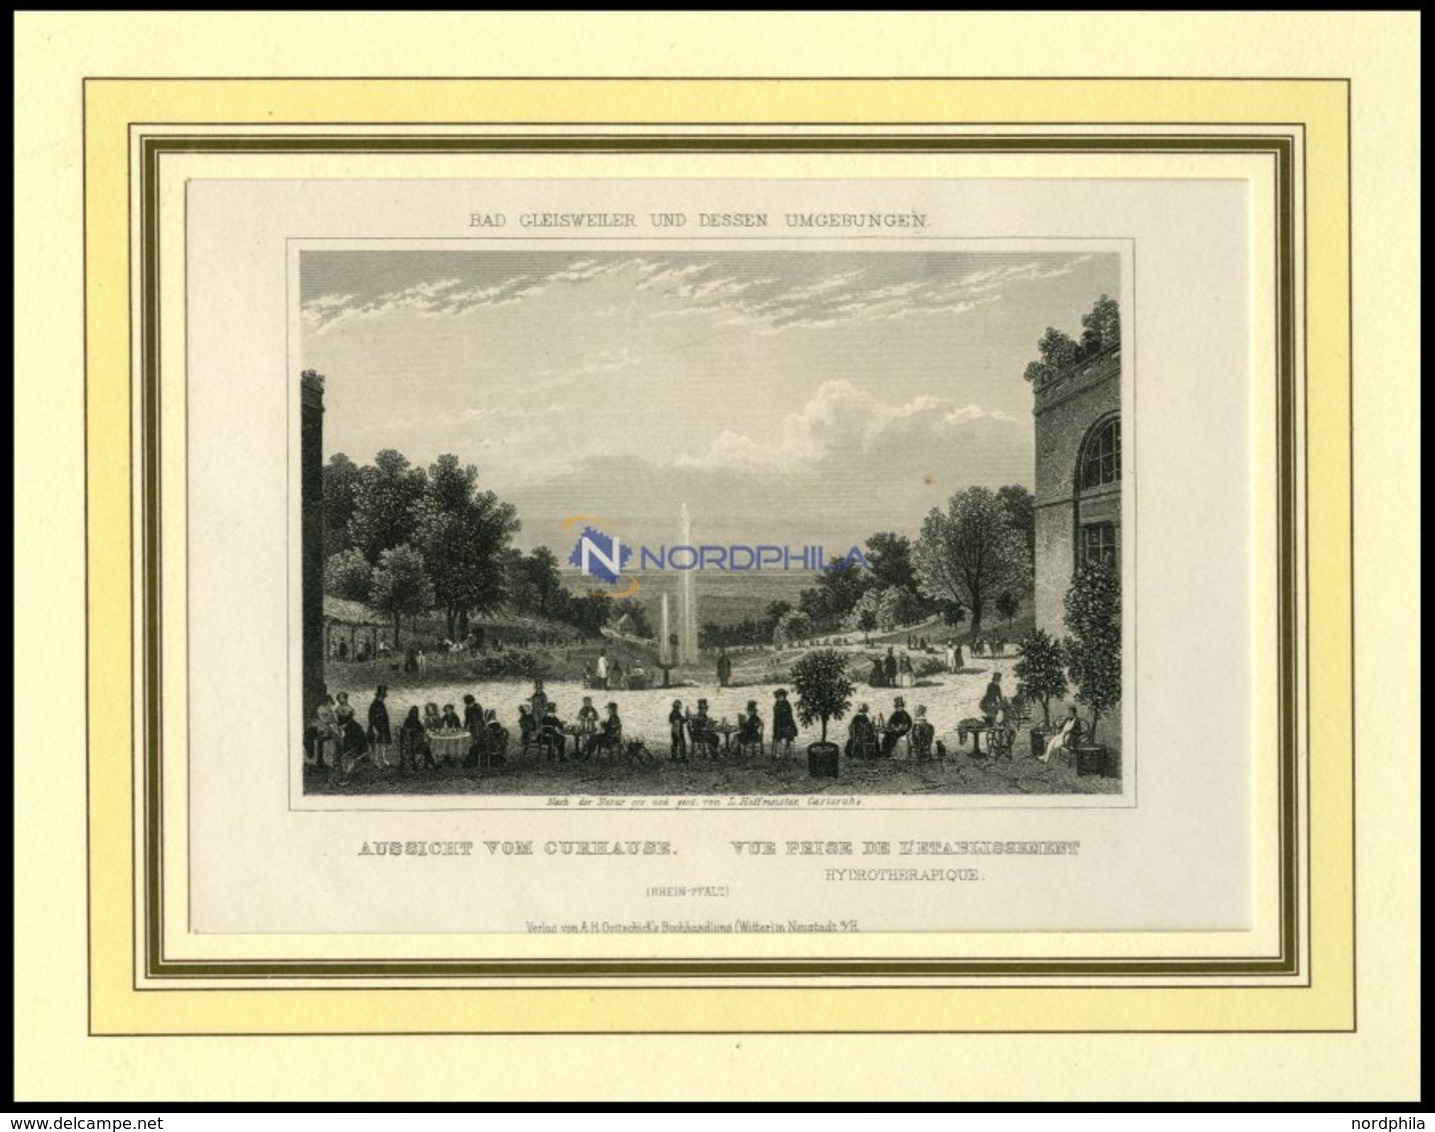 BAD GLEISWEILER, Gesamtansicht Vom Curhaus Aus Gesehen, Stahlstich Aus Romantische Rheinpfalz Um 1840 - Litografía